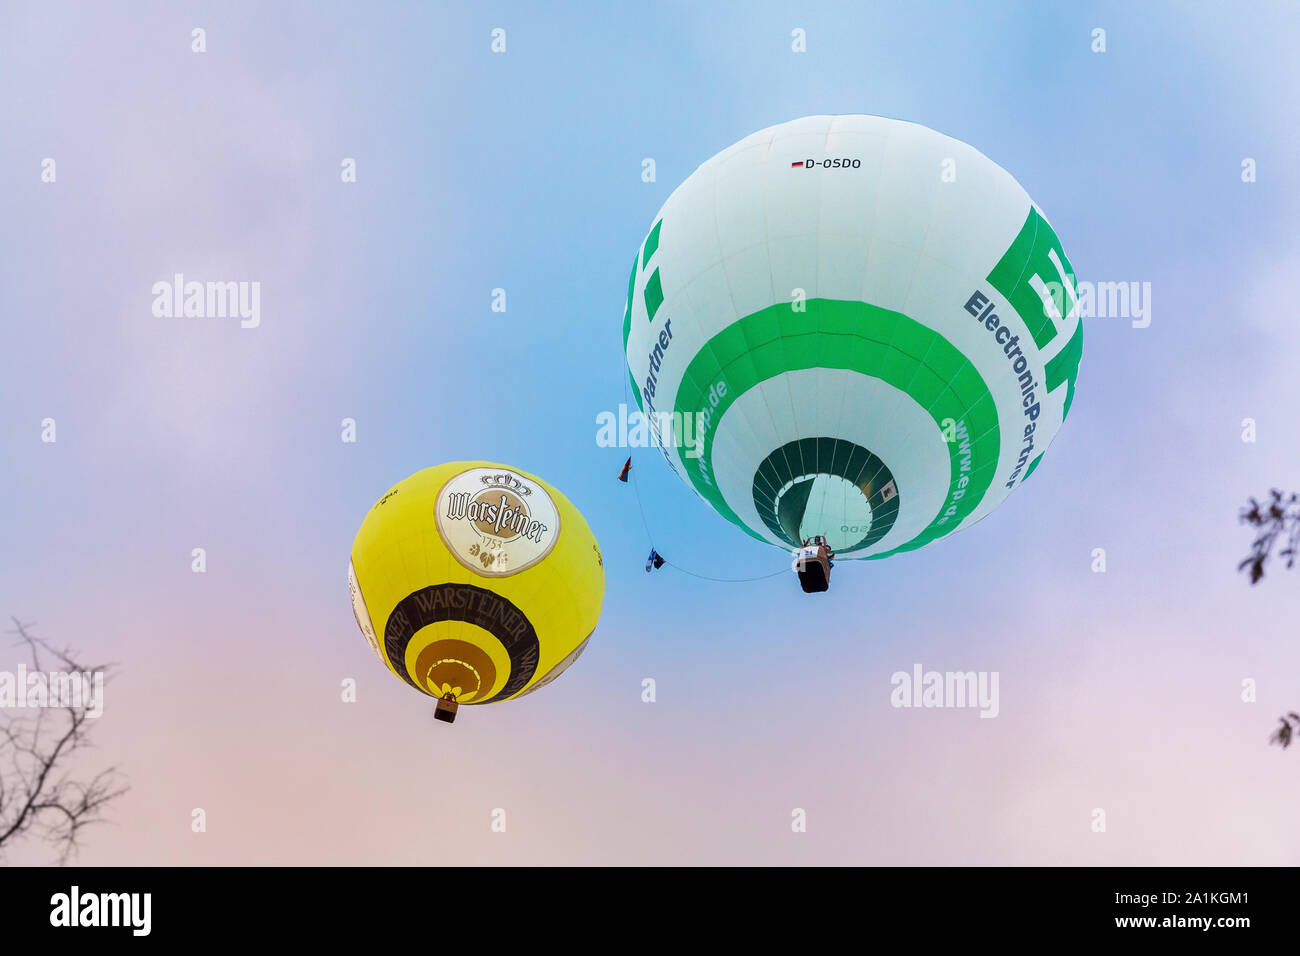 Rüthen della Renania settentrionale-Vestfalia/Germania - 2 Settembre 2019: Warsteins montgolfiade internazionale è il caso con i palloni ad aria calda. Due differenti ba Foto Stock